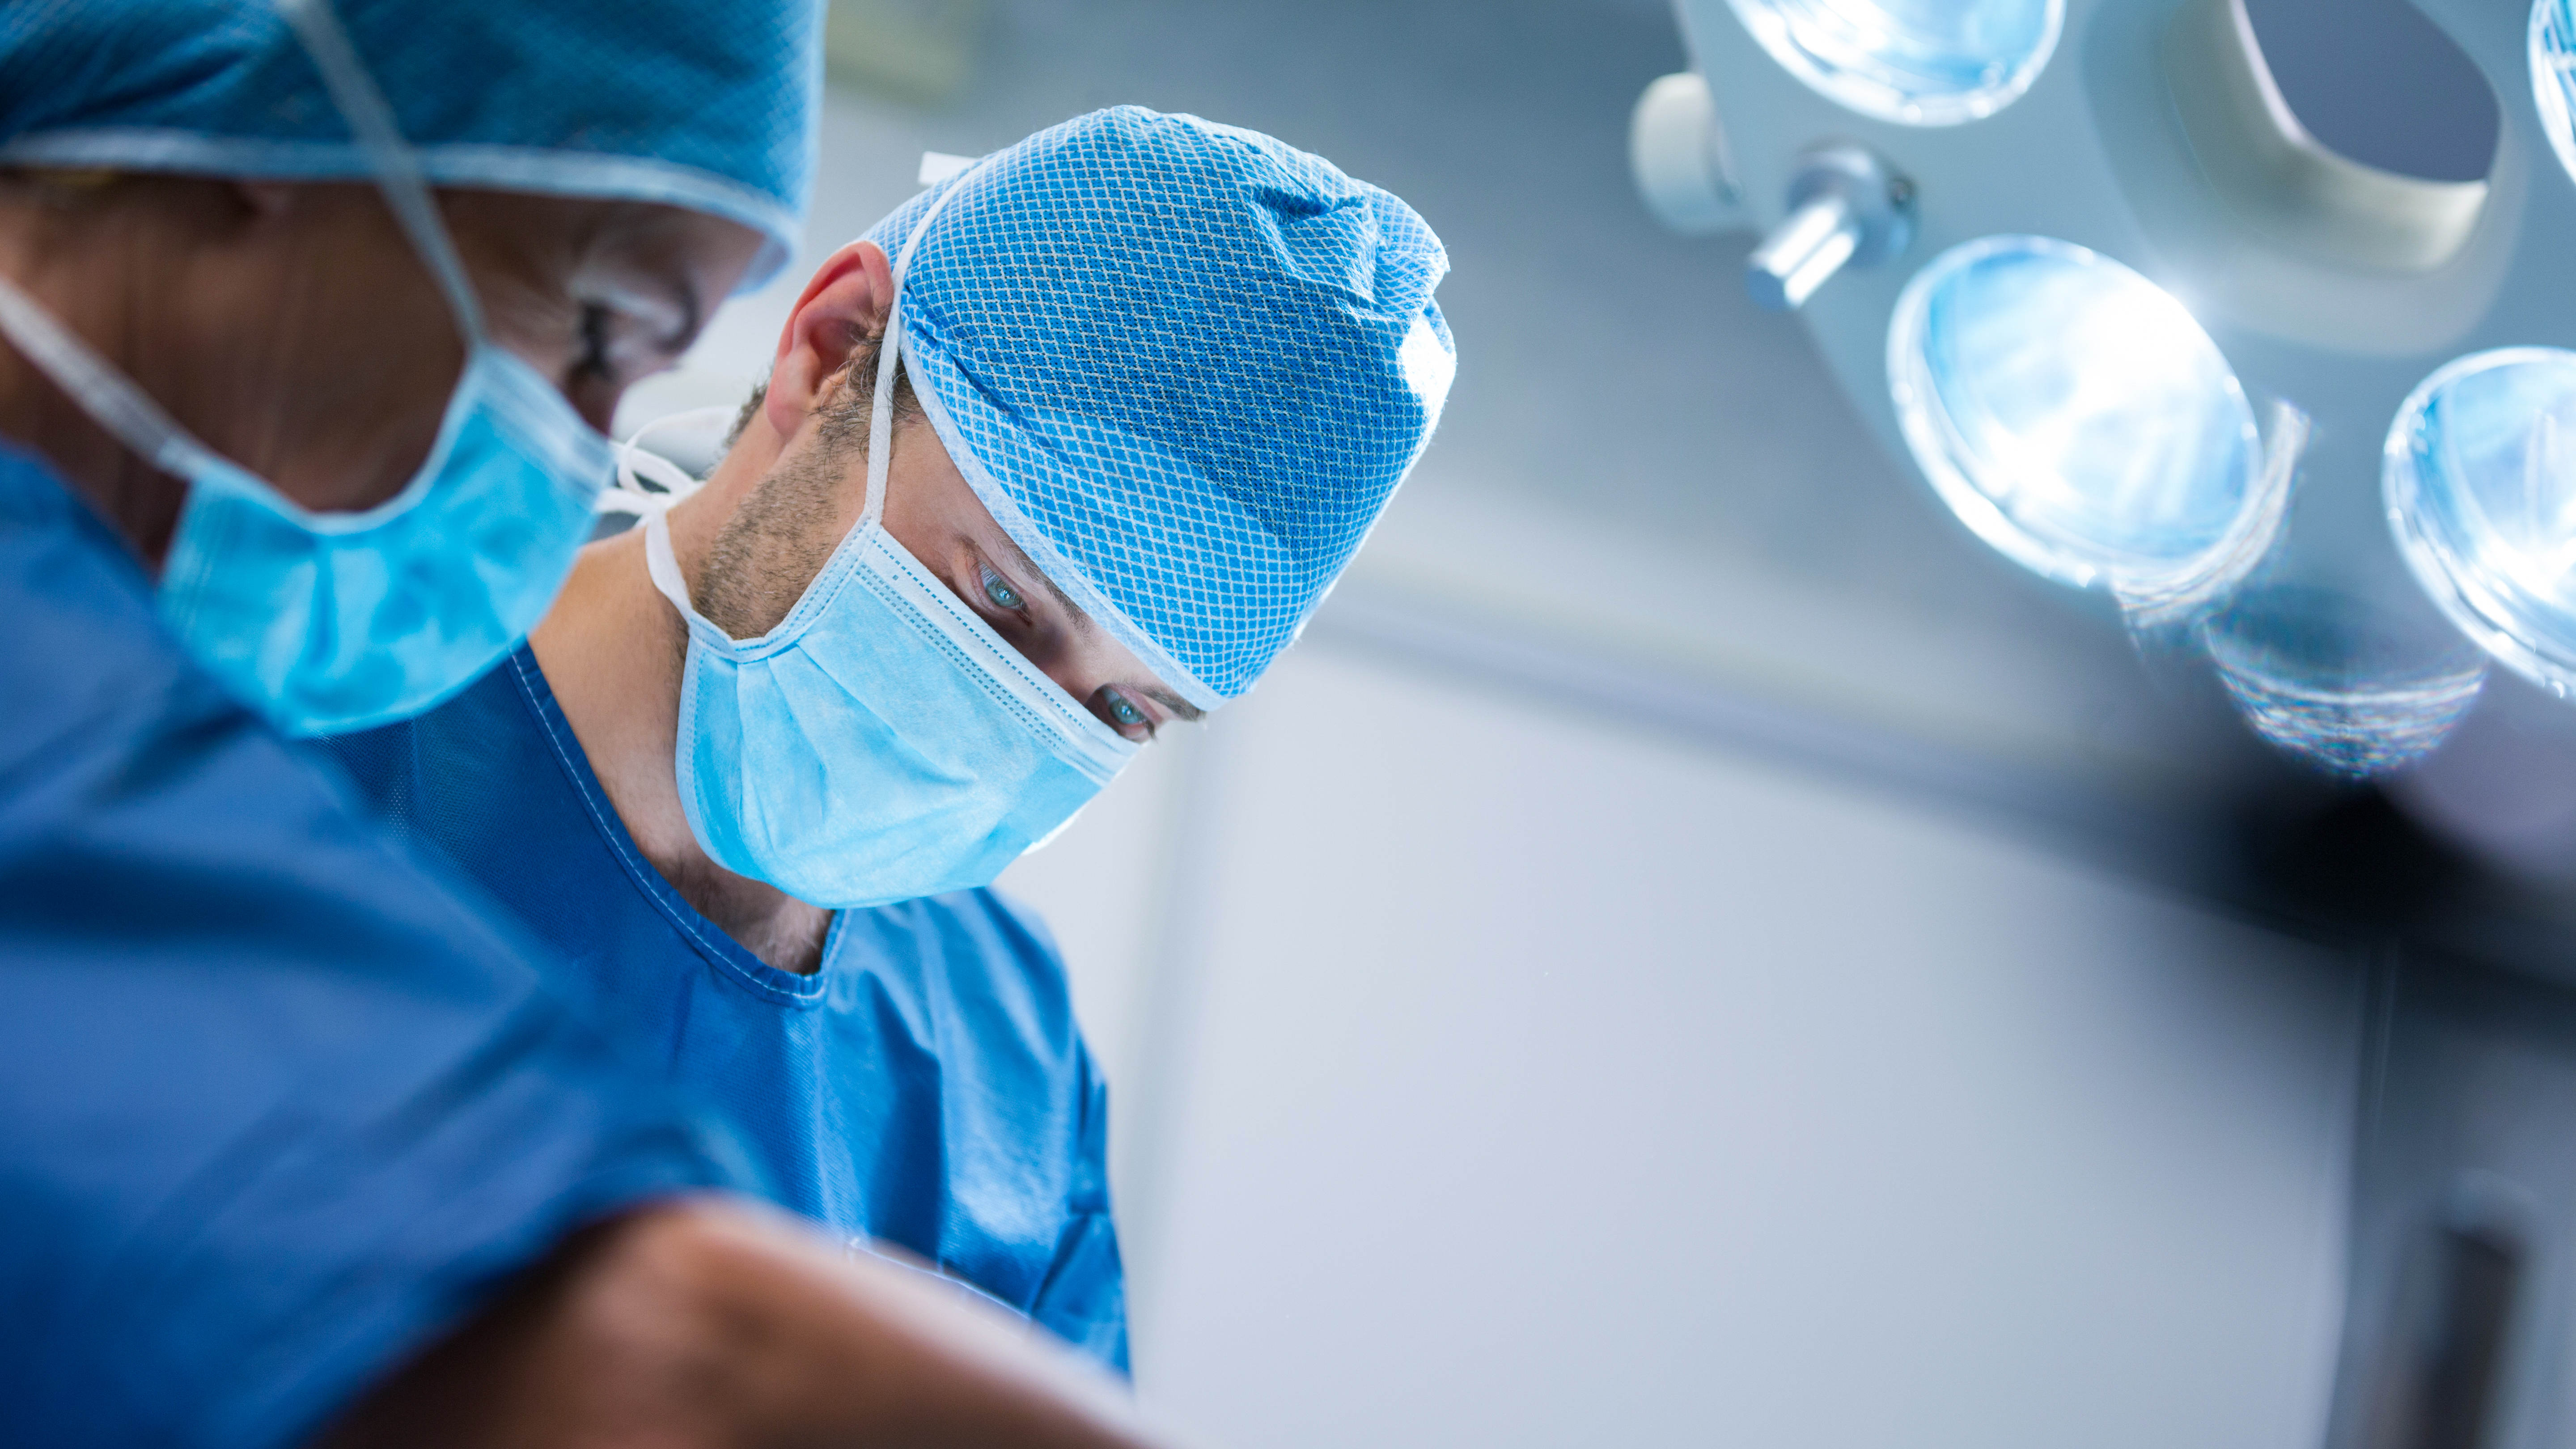 Ульяновские хирурги провели срочную операцию и спасли пациентку с большой кистой правой доли печени